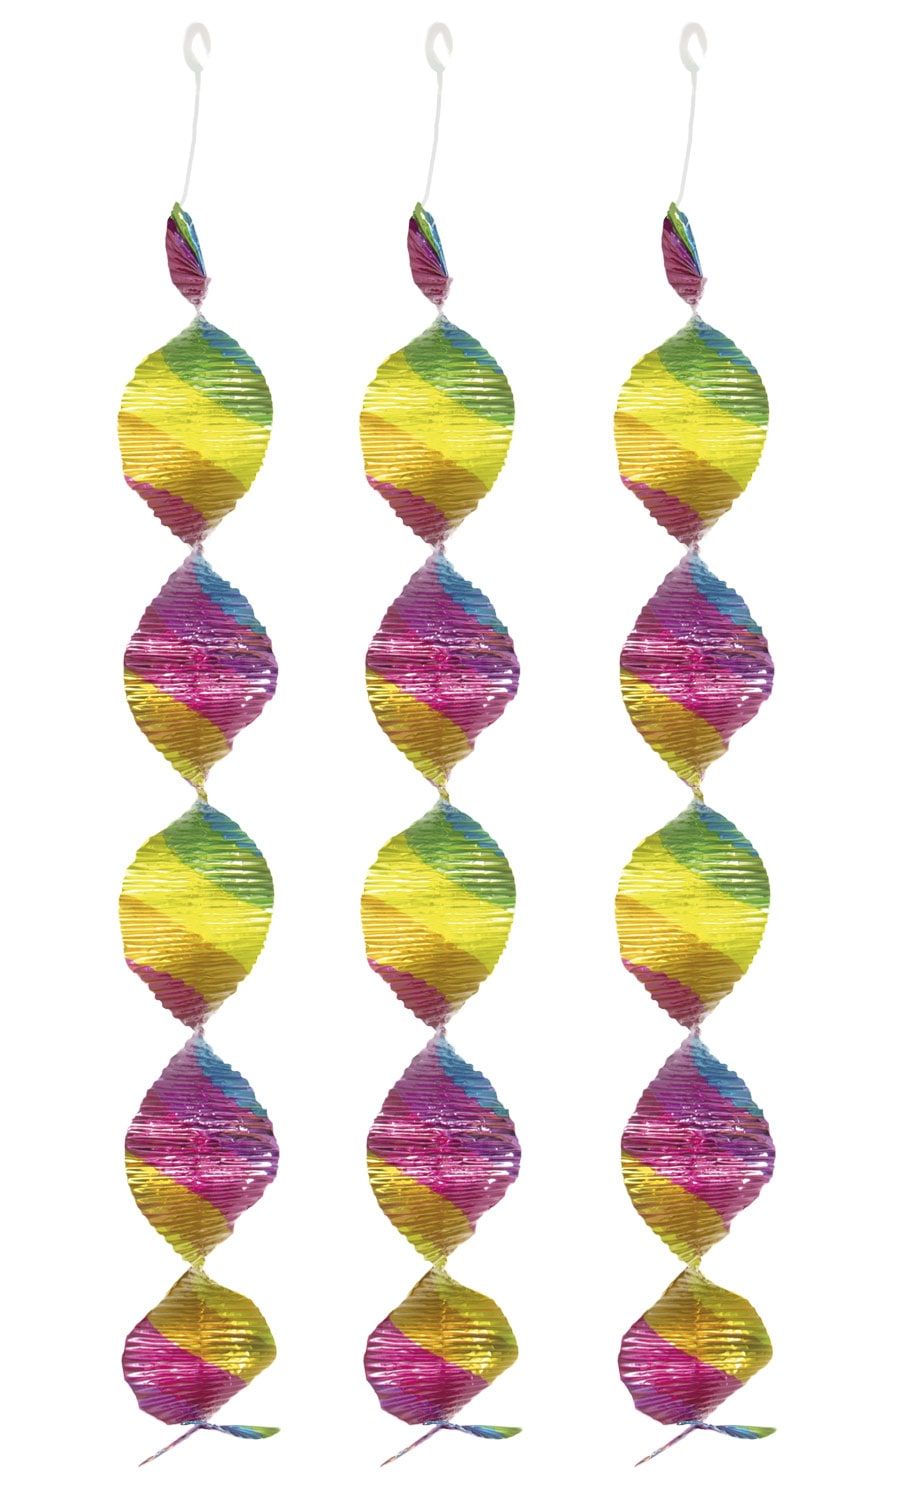 Regenboog spiraal swirl decoratie